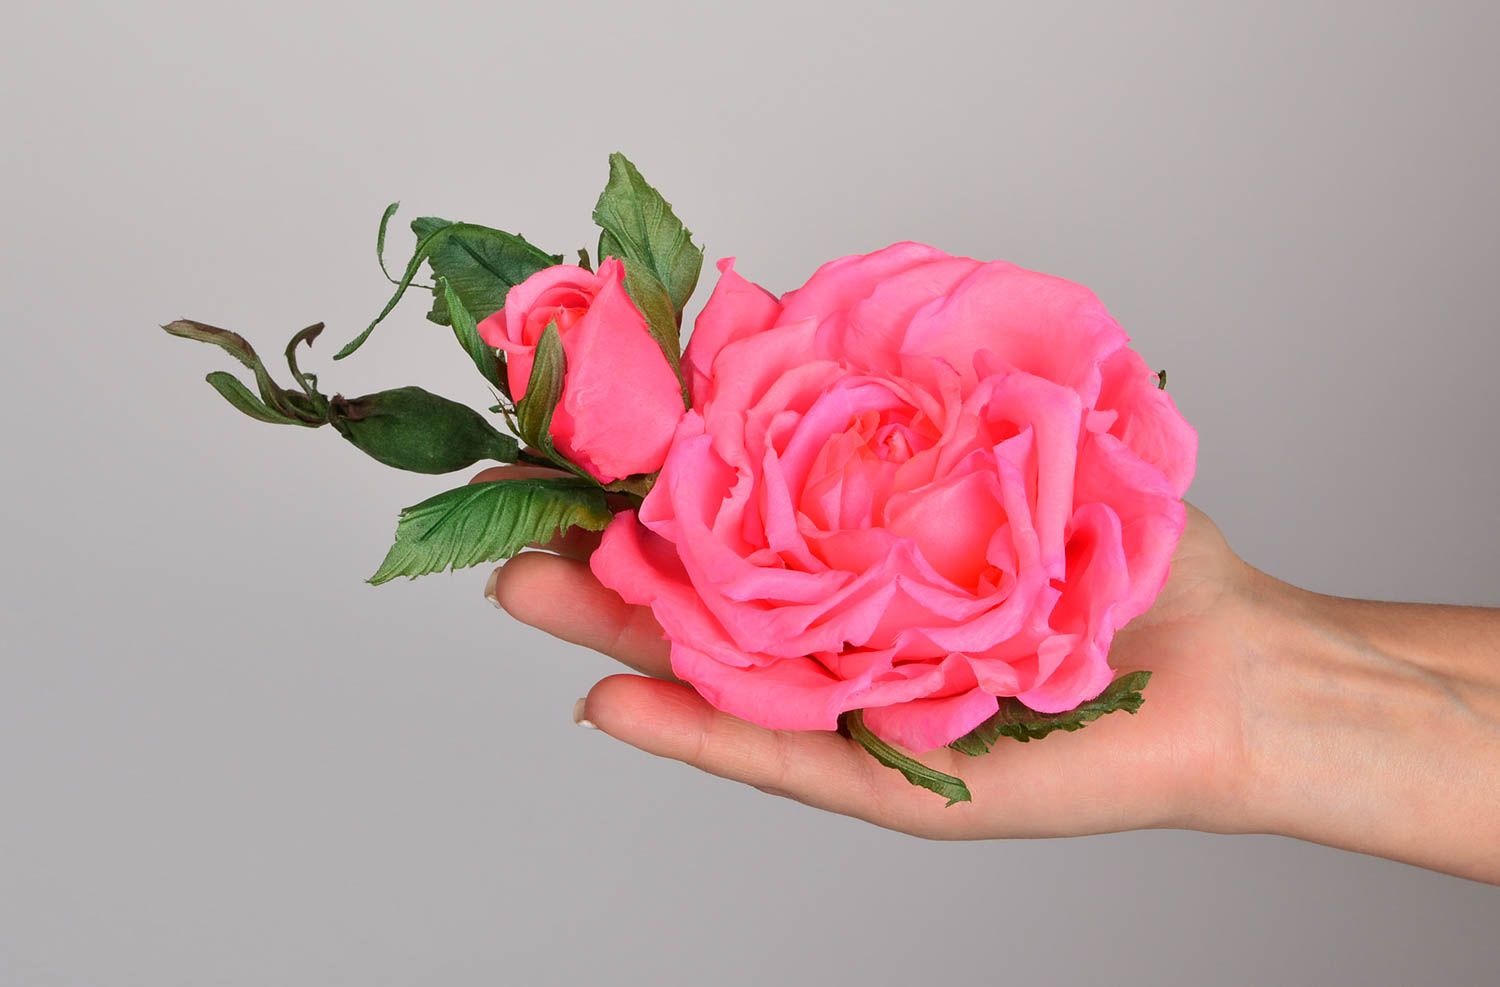 Брошь из шелка хэнд мэйд брошь-заколка розовая роза авторская бижутерия фото 5